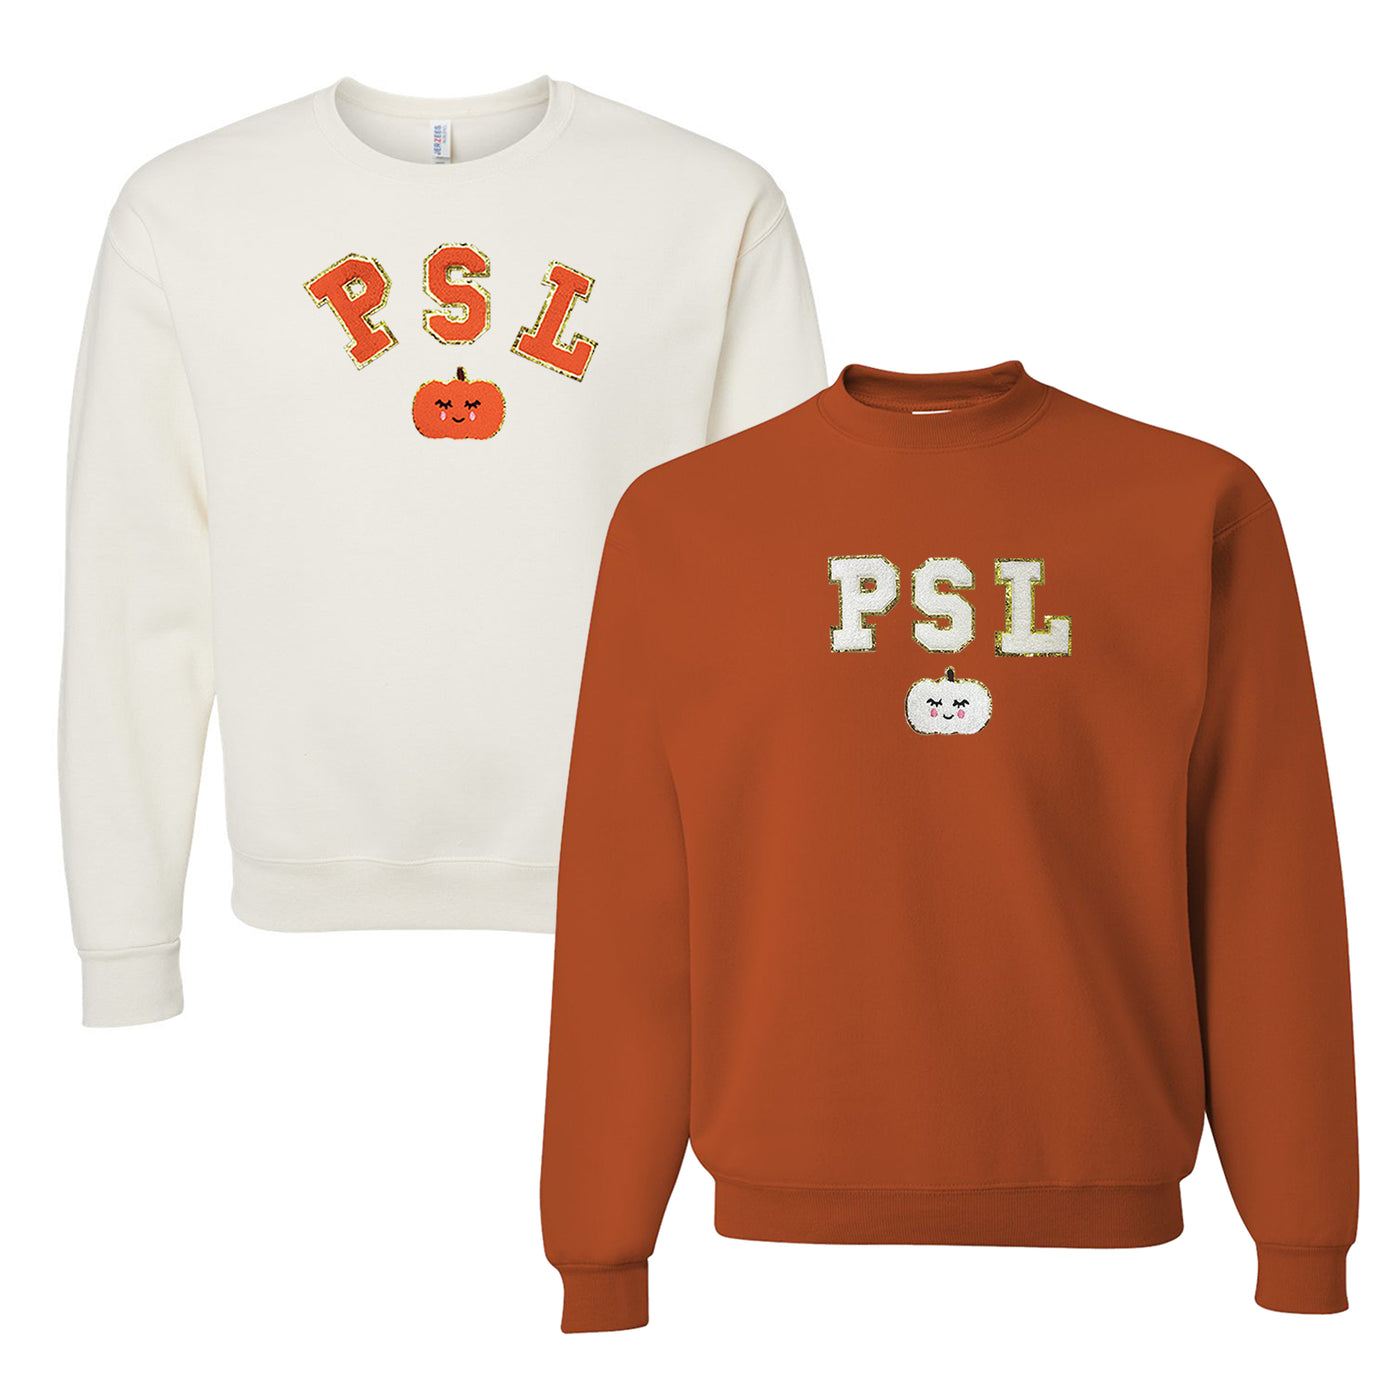 PSL Letter Patch Crewneck Sweatshirt